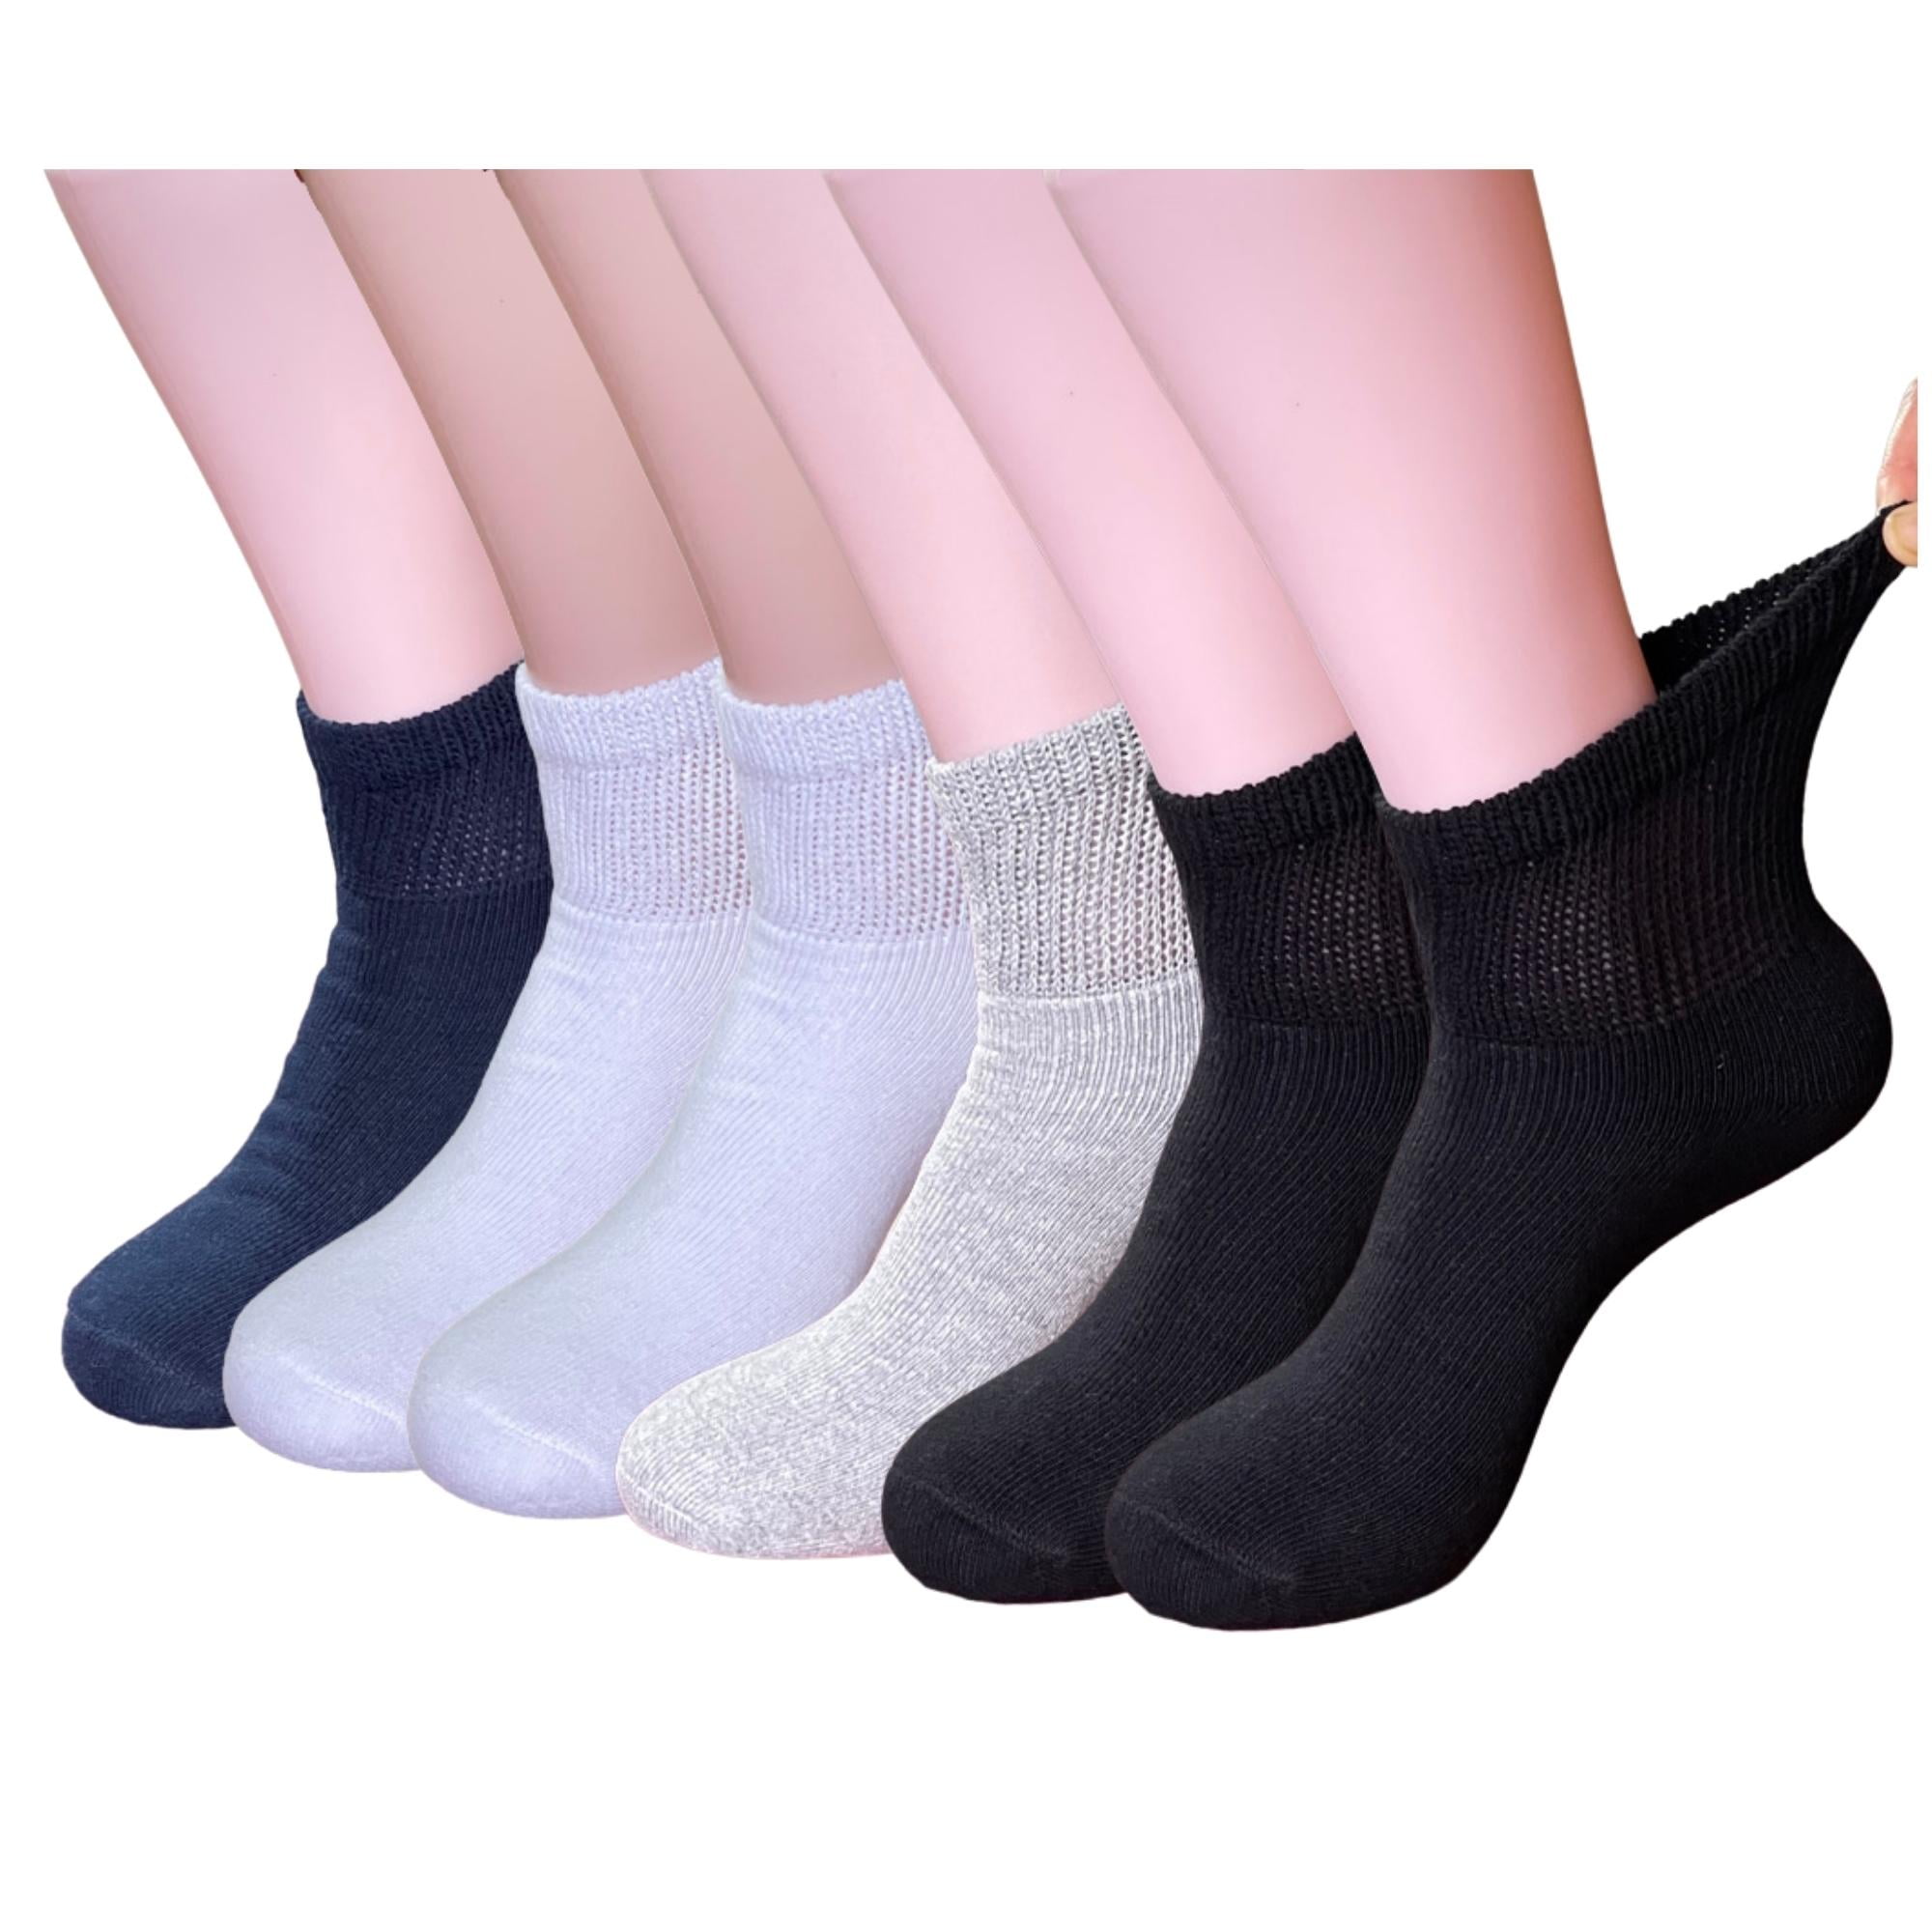 Fancy Pix Diabetic Socks Women&Men-6 Pairs Colorful Cotton Ankle Non ...